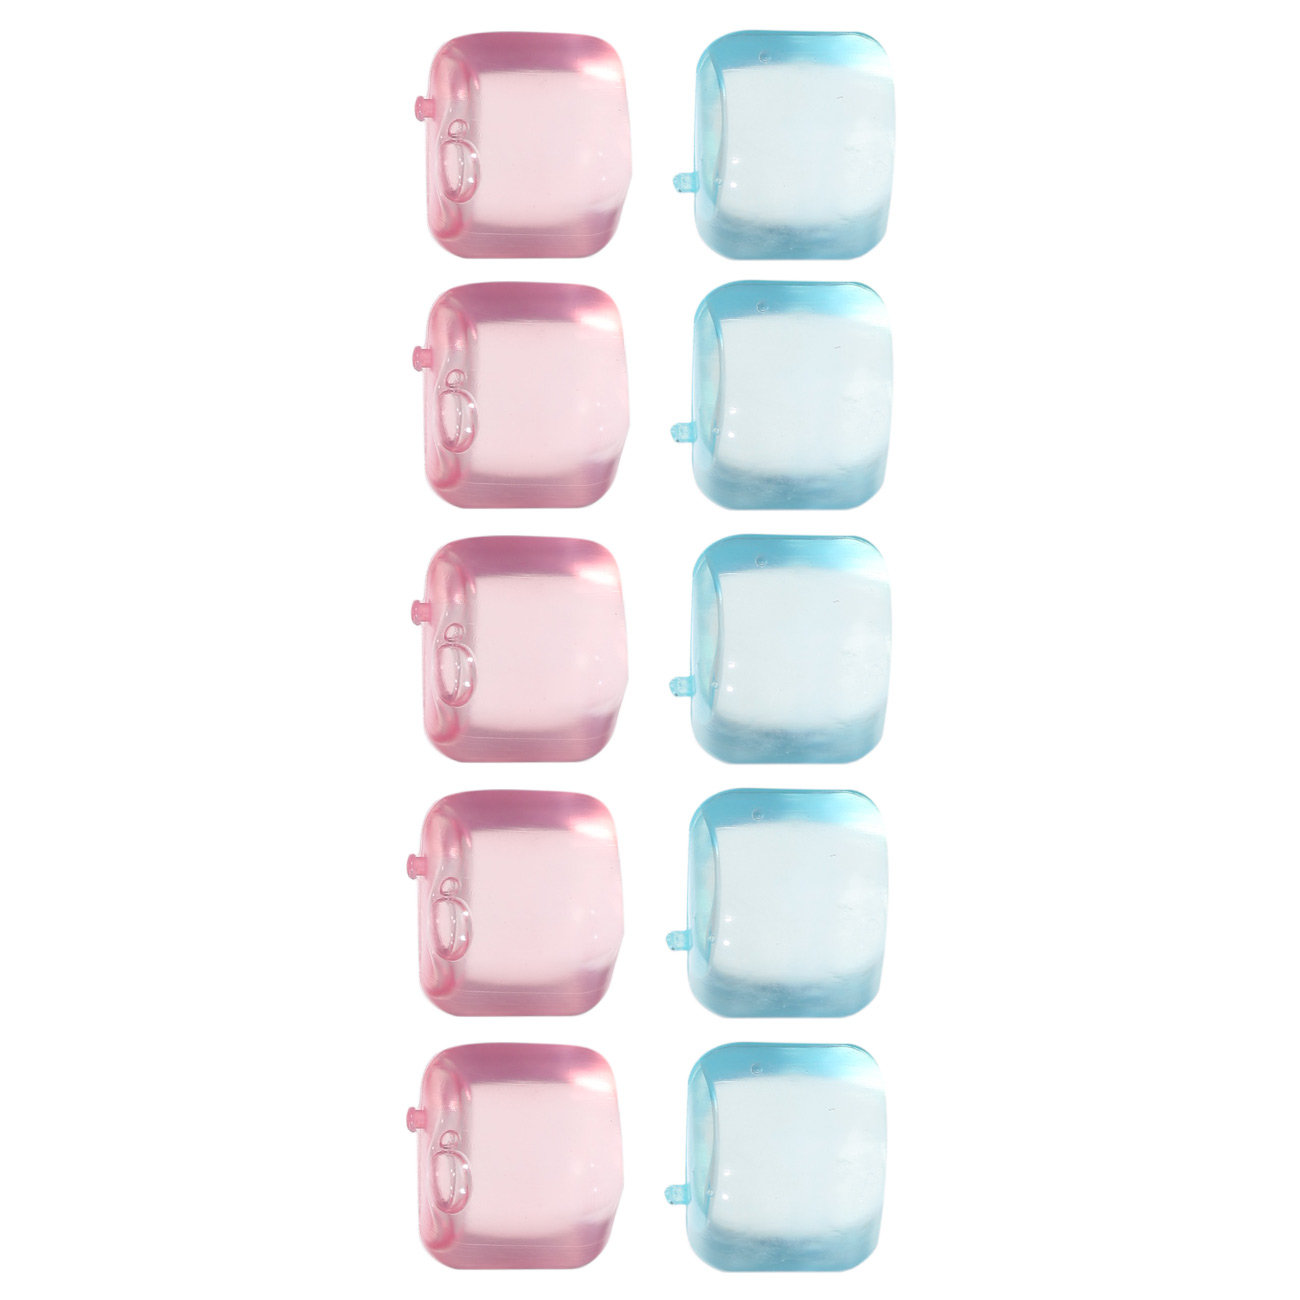 Набор кубиков для охлаждения напитков, 10 шт, пластик, розовый/голубой, Dolce Vita изображение № 6